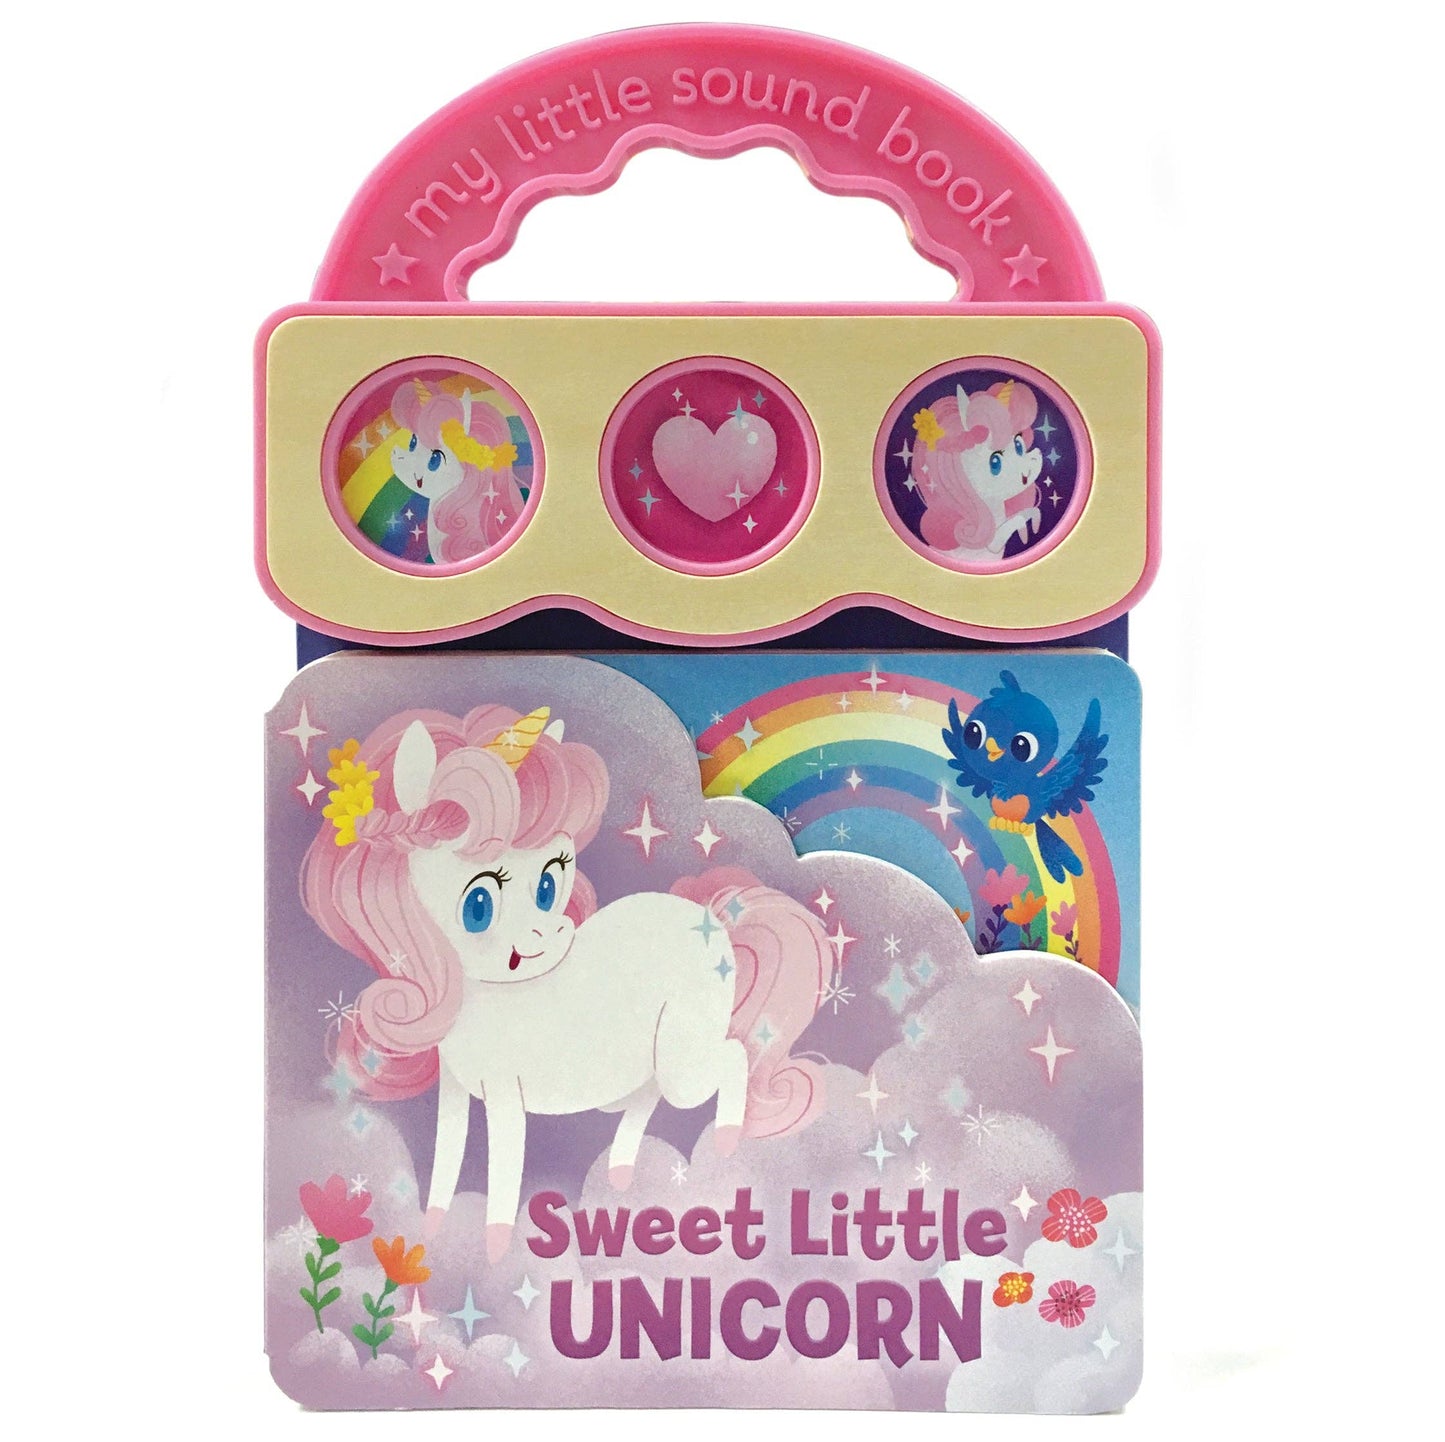 Sweet Little Unicorn Board Book